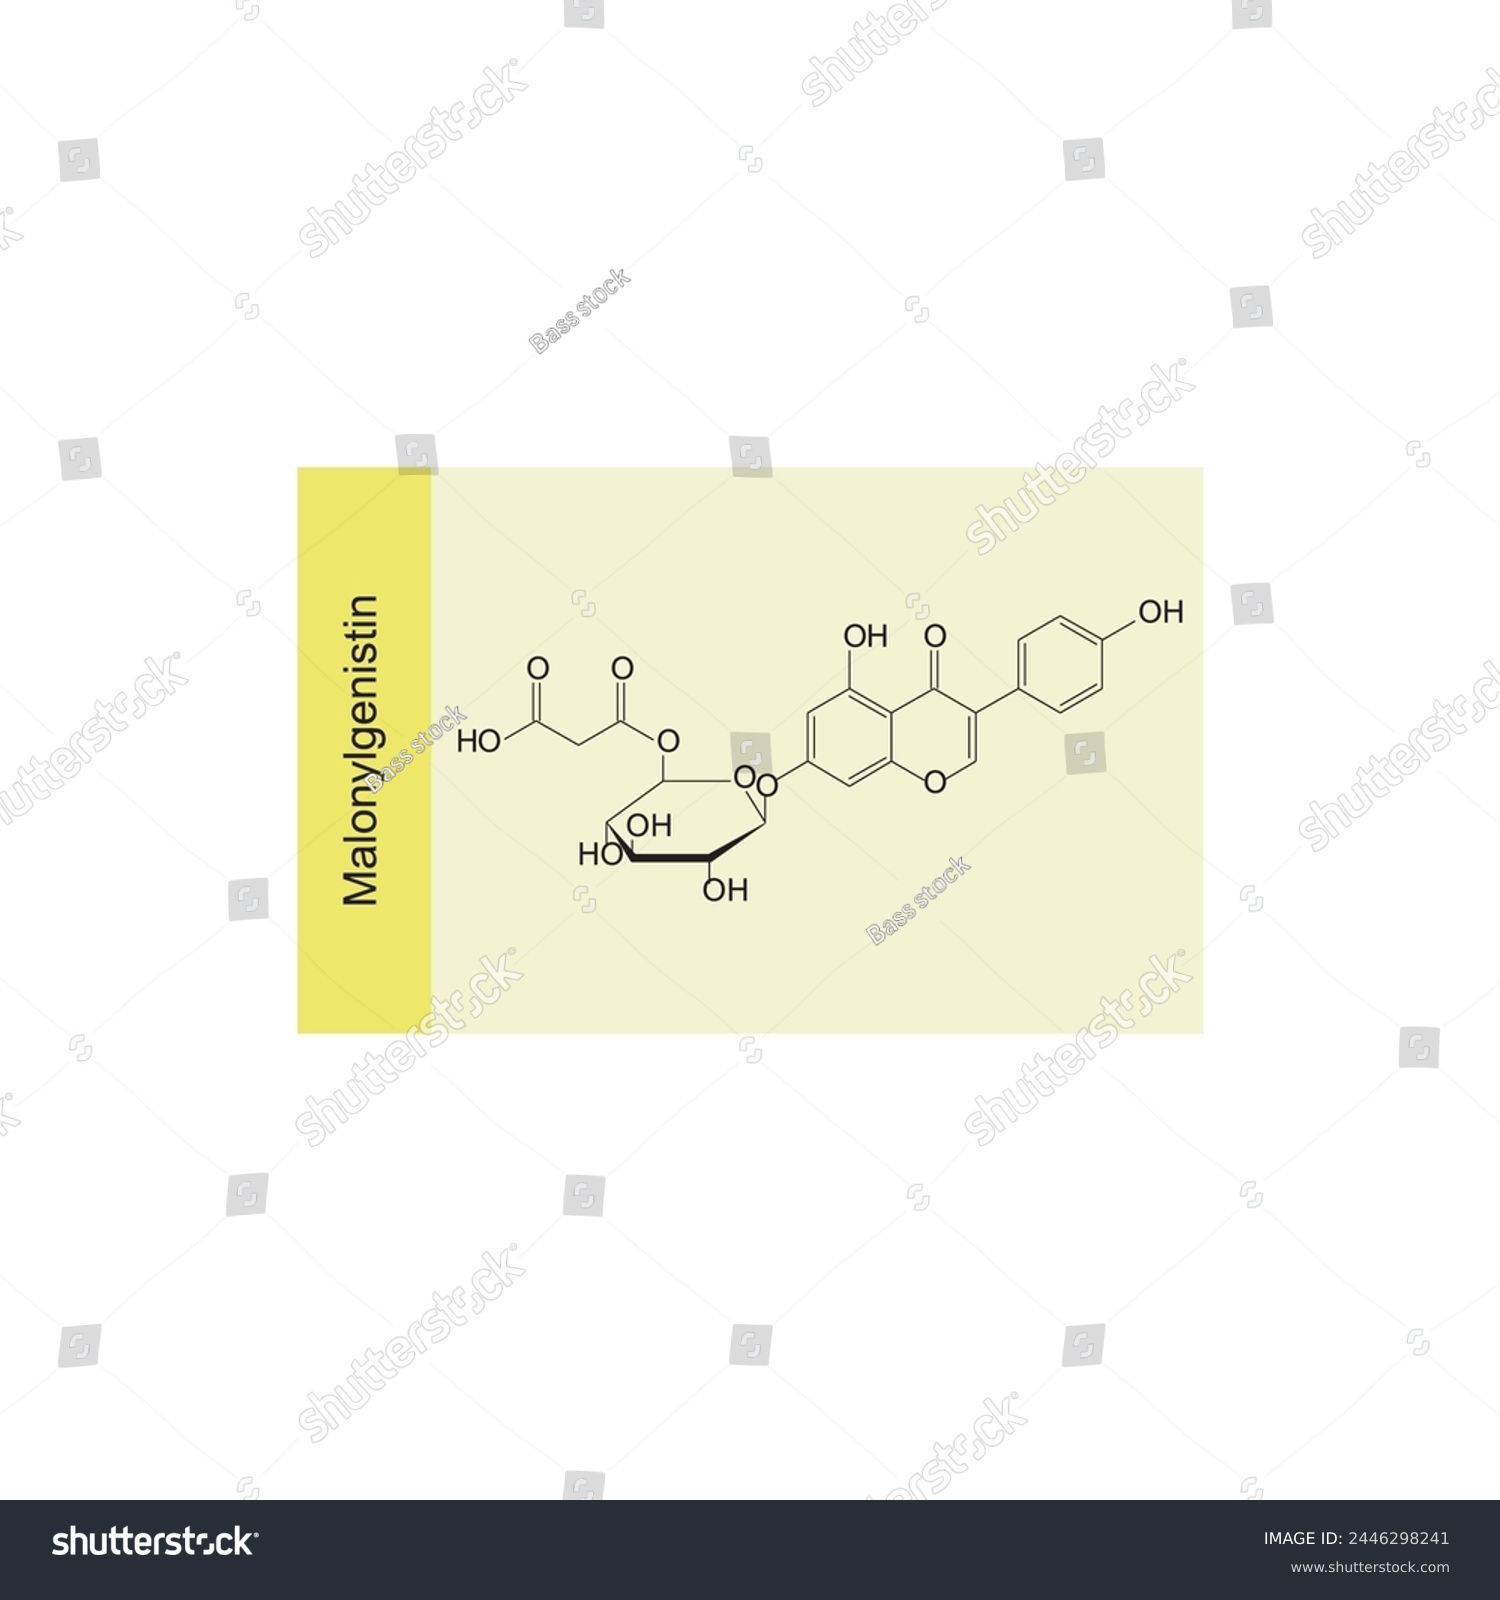 SVG of Malonyldaidzin skeletal structure diagram.Isoflavanone compound molecule scientific illustration on yellow background. svg